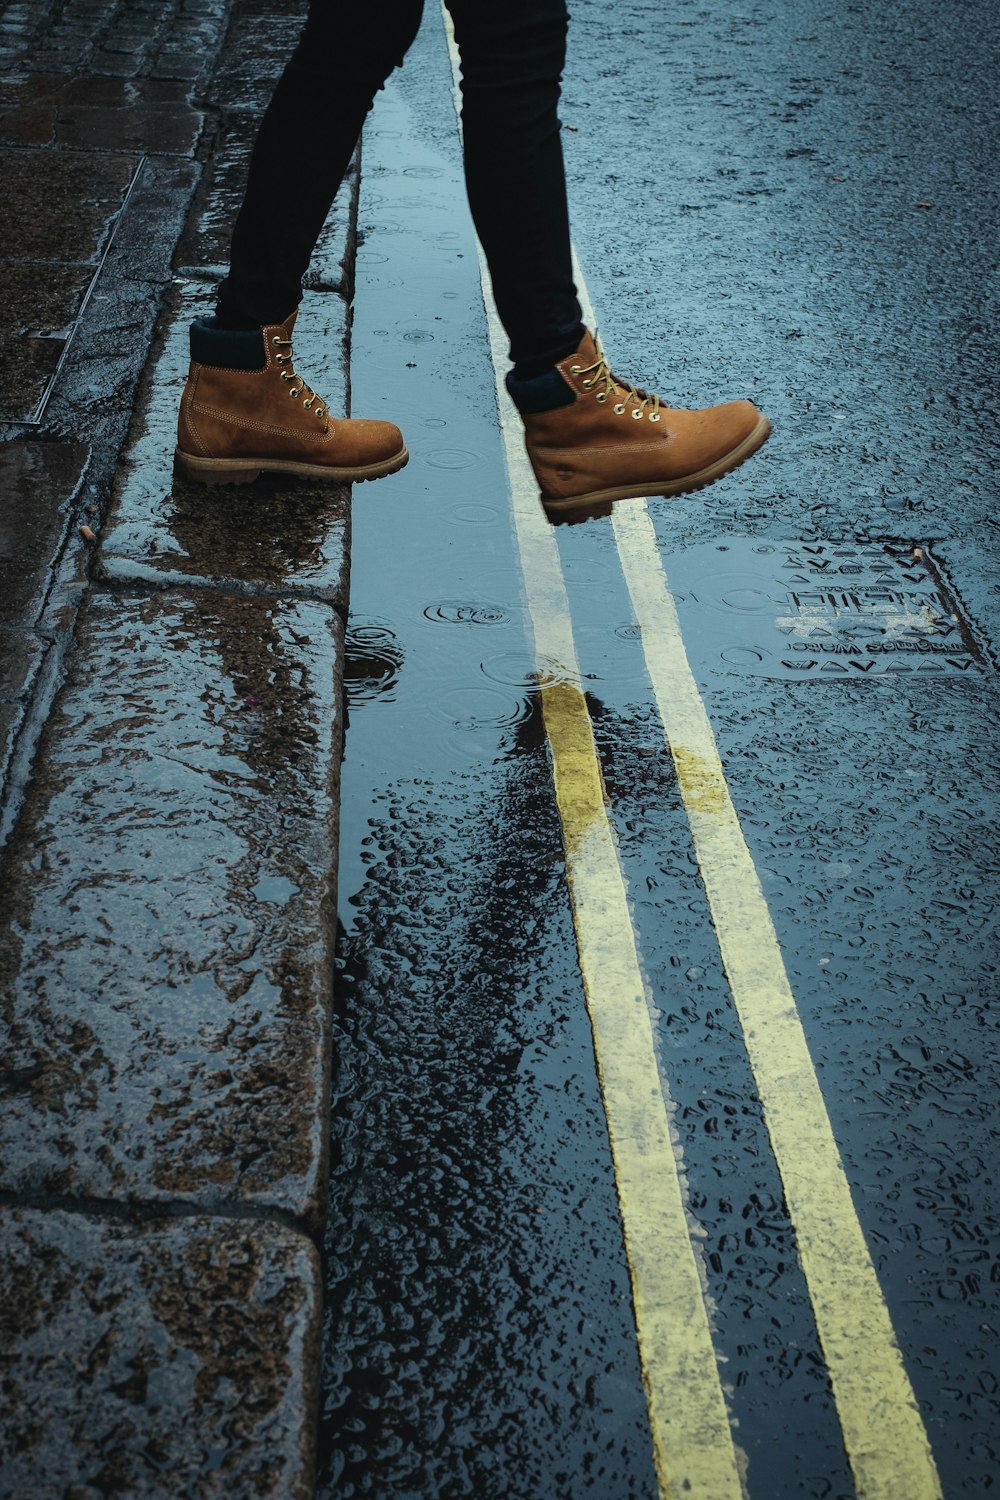 personne portant des bottes brunes marchant sur une route mouillée